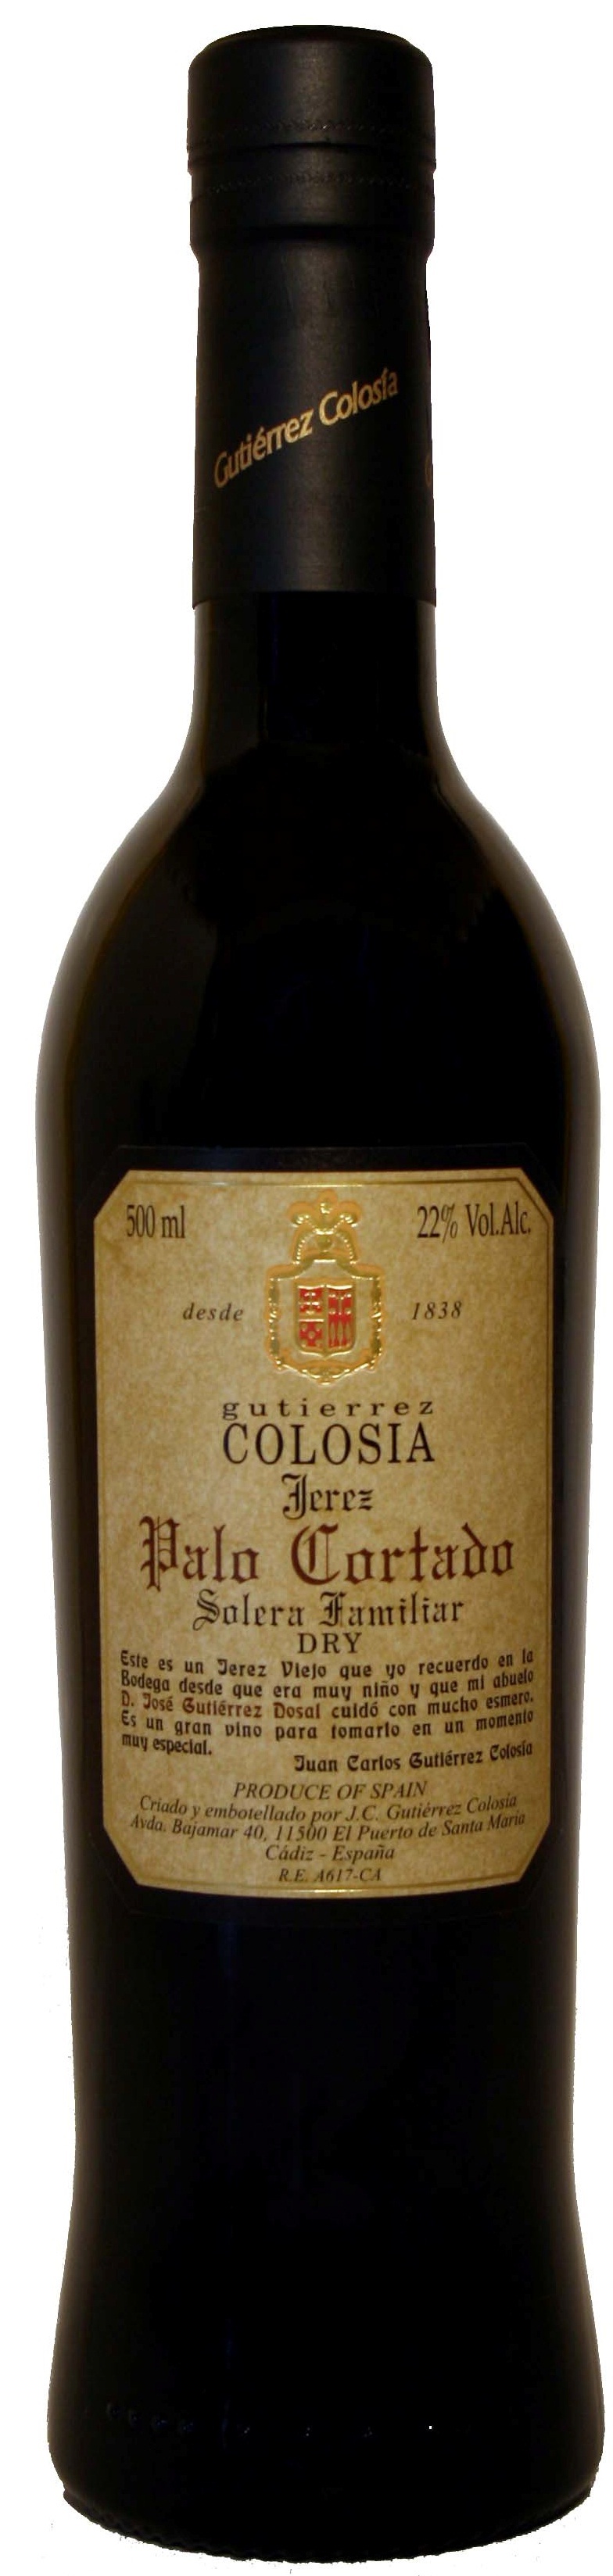 Imagen de la botella de Vino Colosía Solera Familiar Palo Cortado